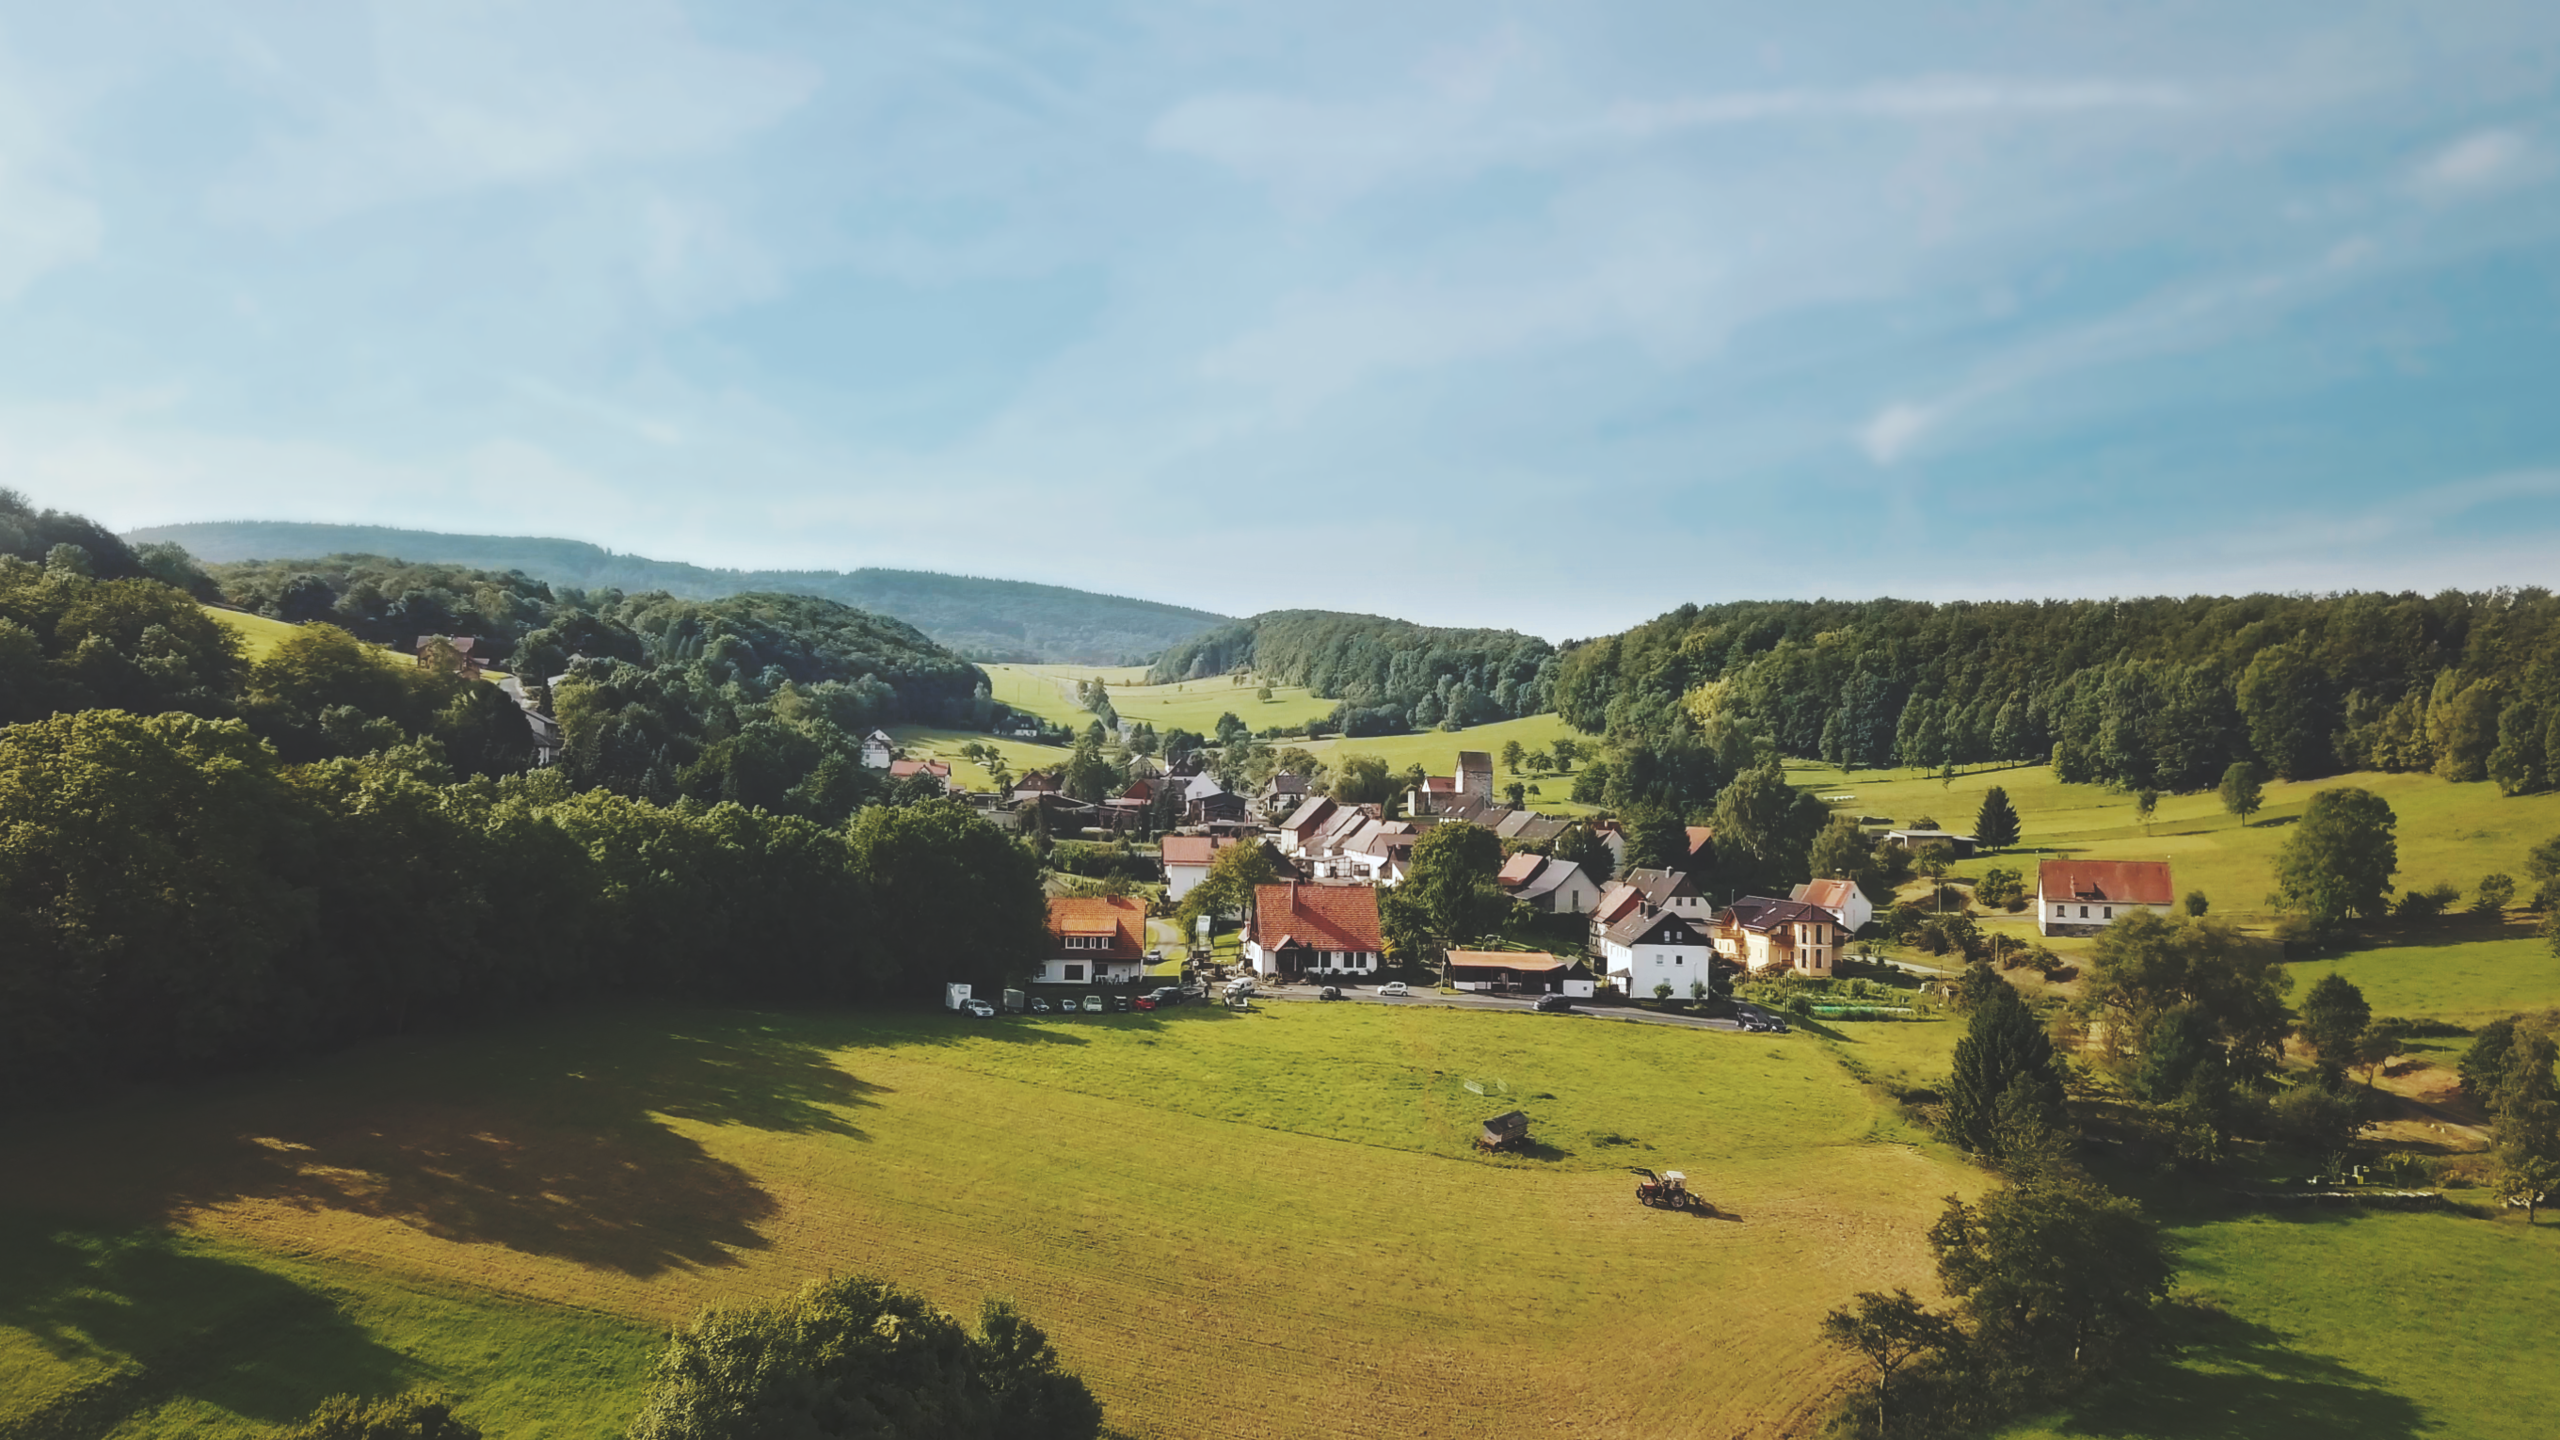 Dorf bei Weissenbach in Nordhessen